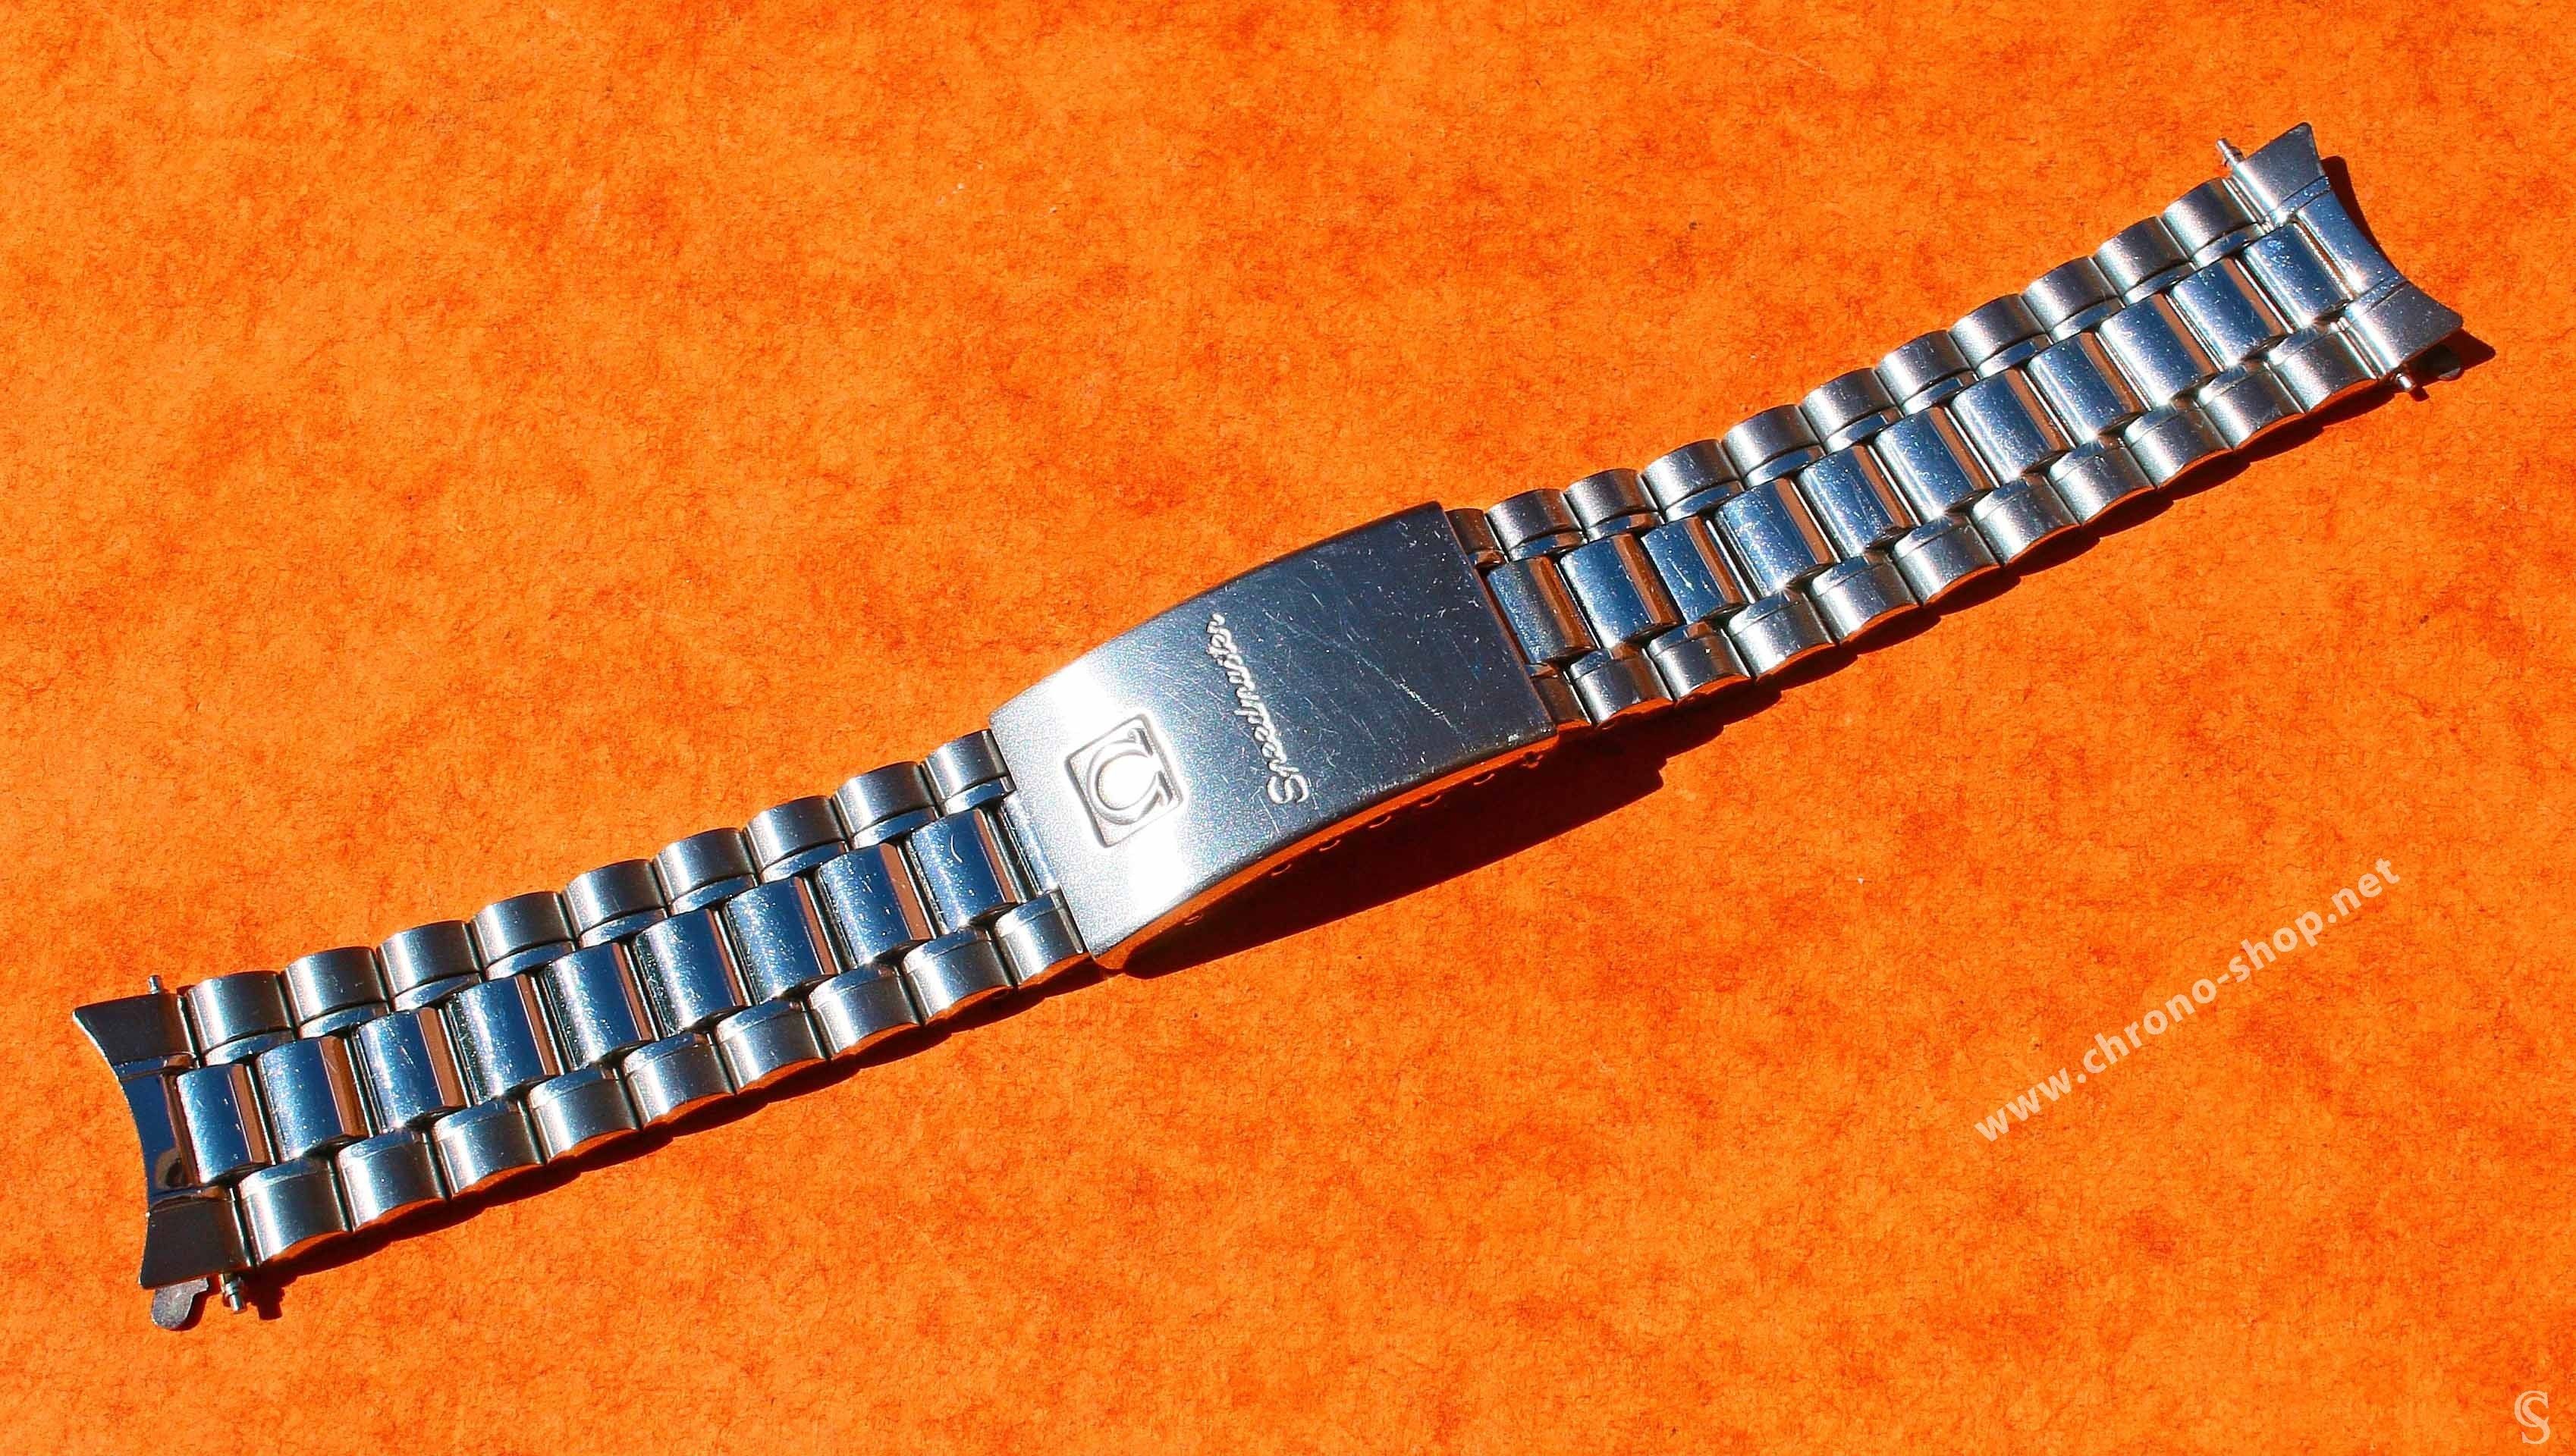 omega speedmaster bracelet links